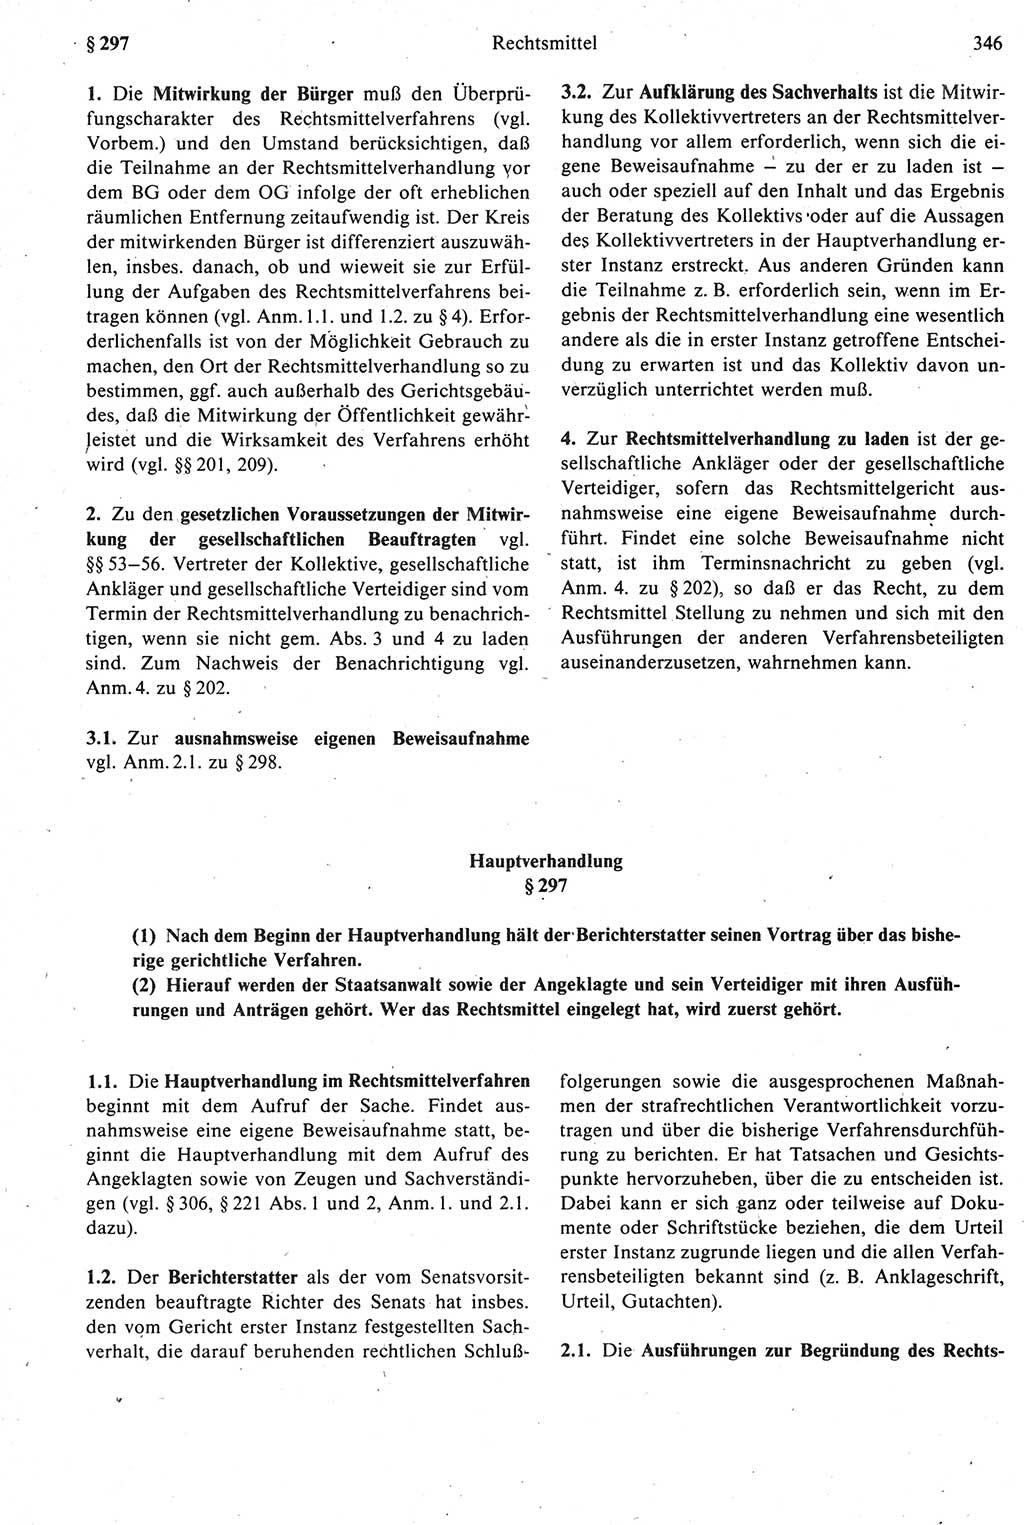 Strafprozeßrecht der DDR [Deutsche Demokratische Republik], Kommentar zur Strafprozeßordnung (StPO) 1987, Seite 346 (Strafprozeßr. DDR Komm. StPO 1987, S. 346)